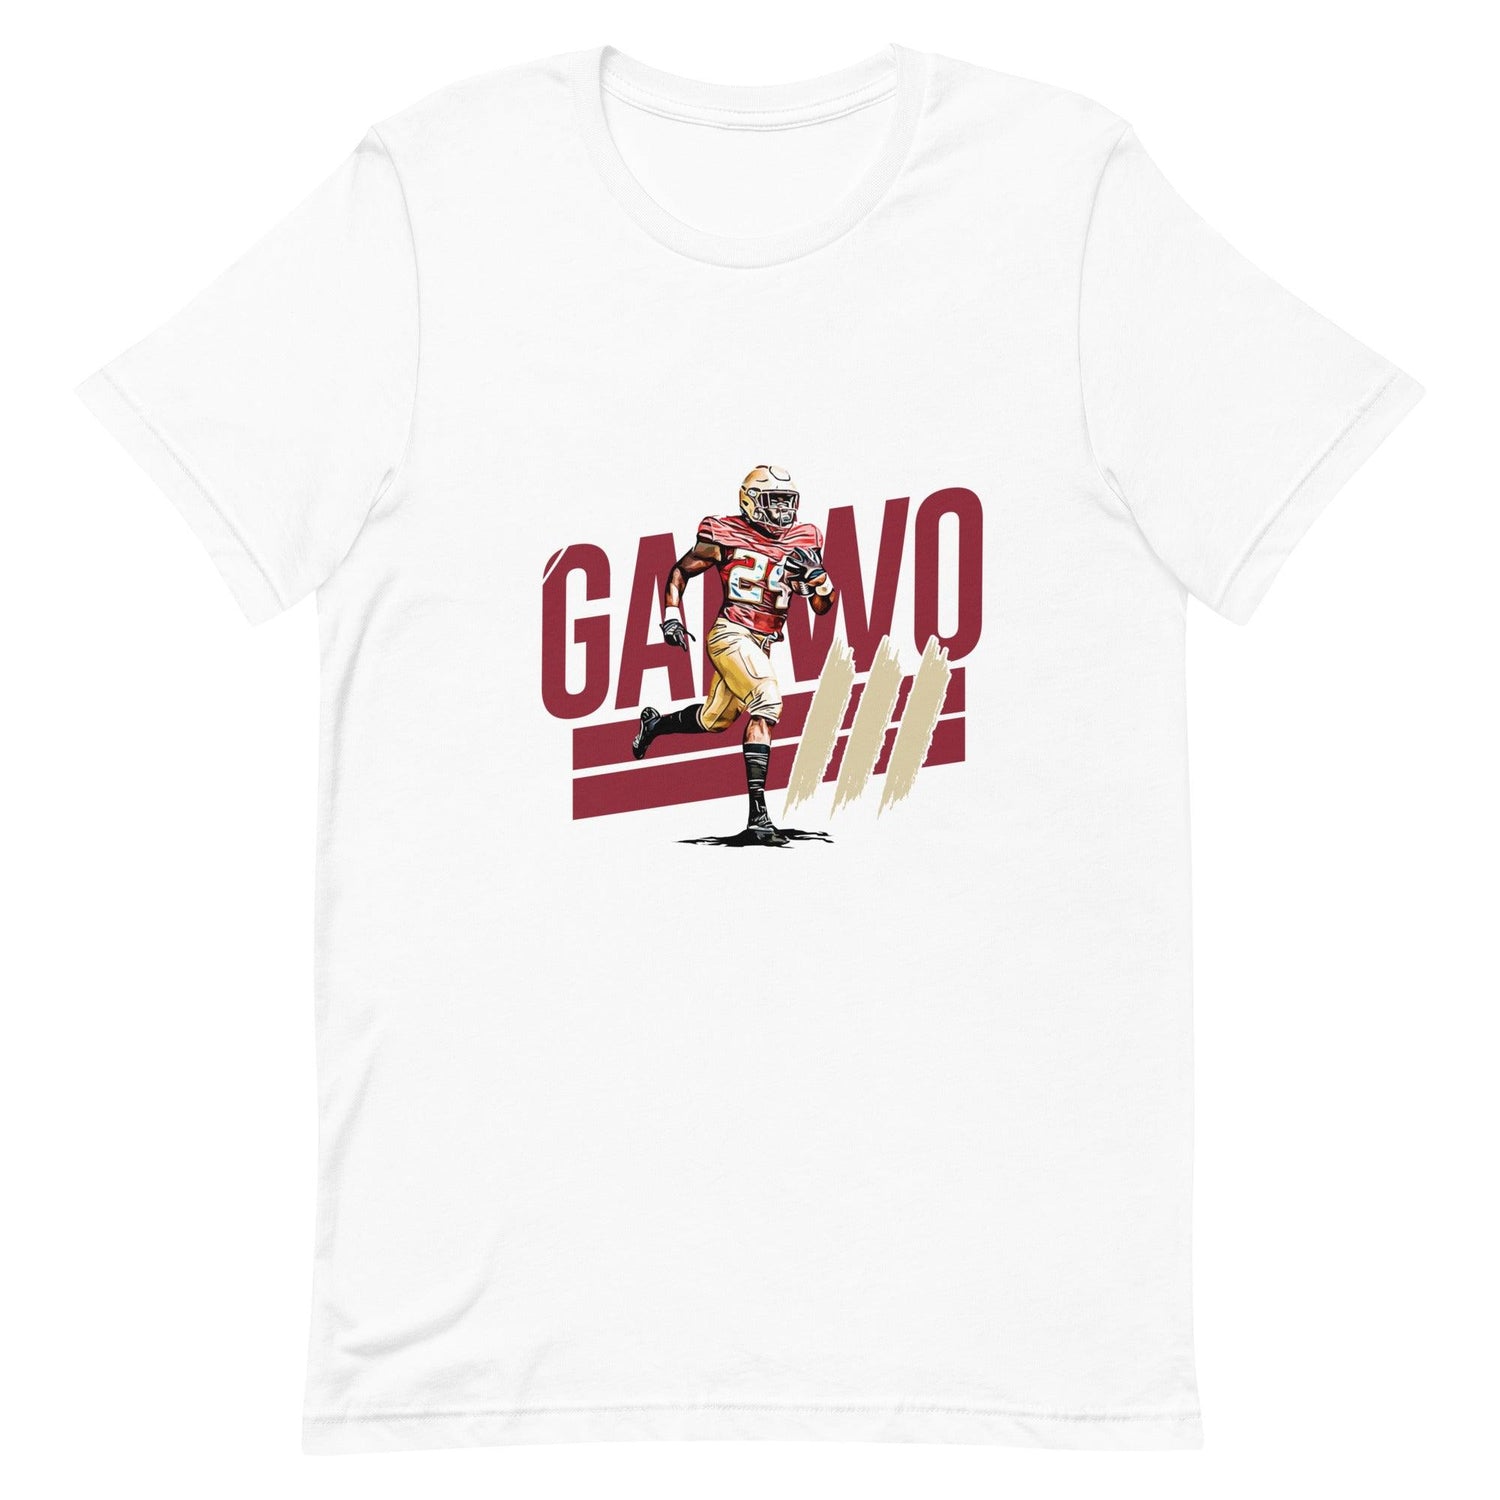 Patrick Garwo III “essential“ t-shirt - Fan Arch